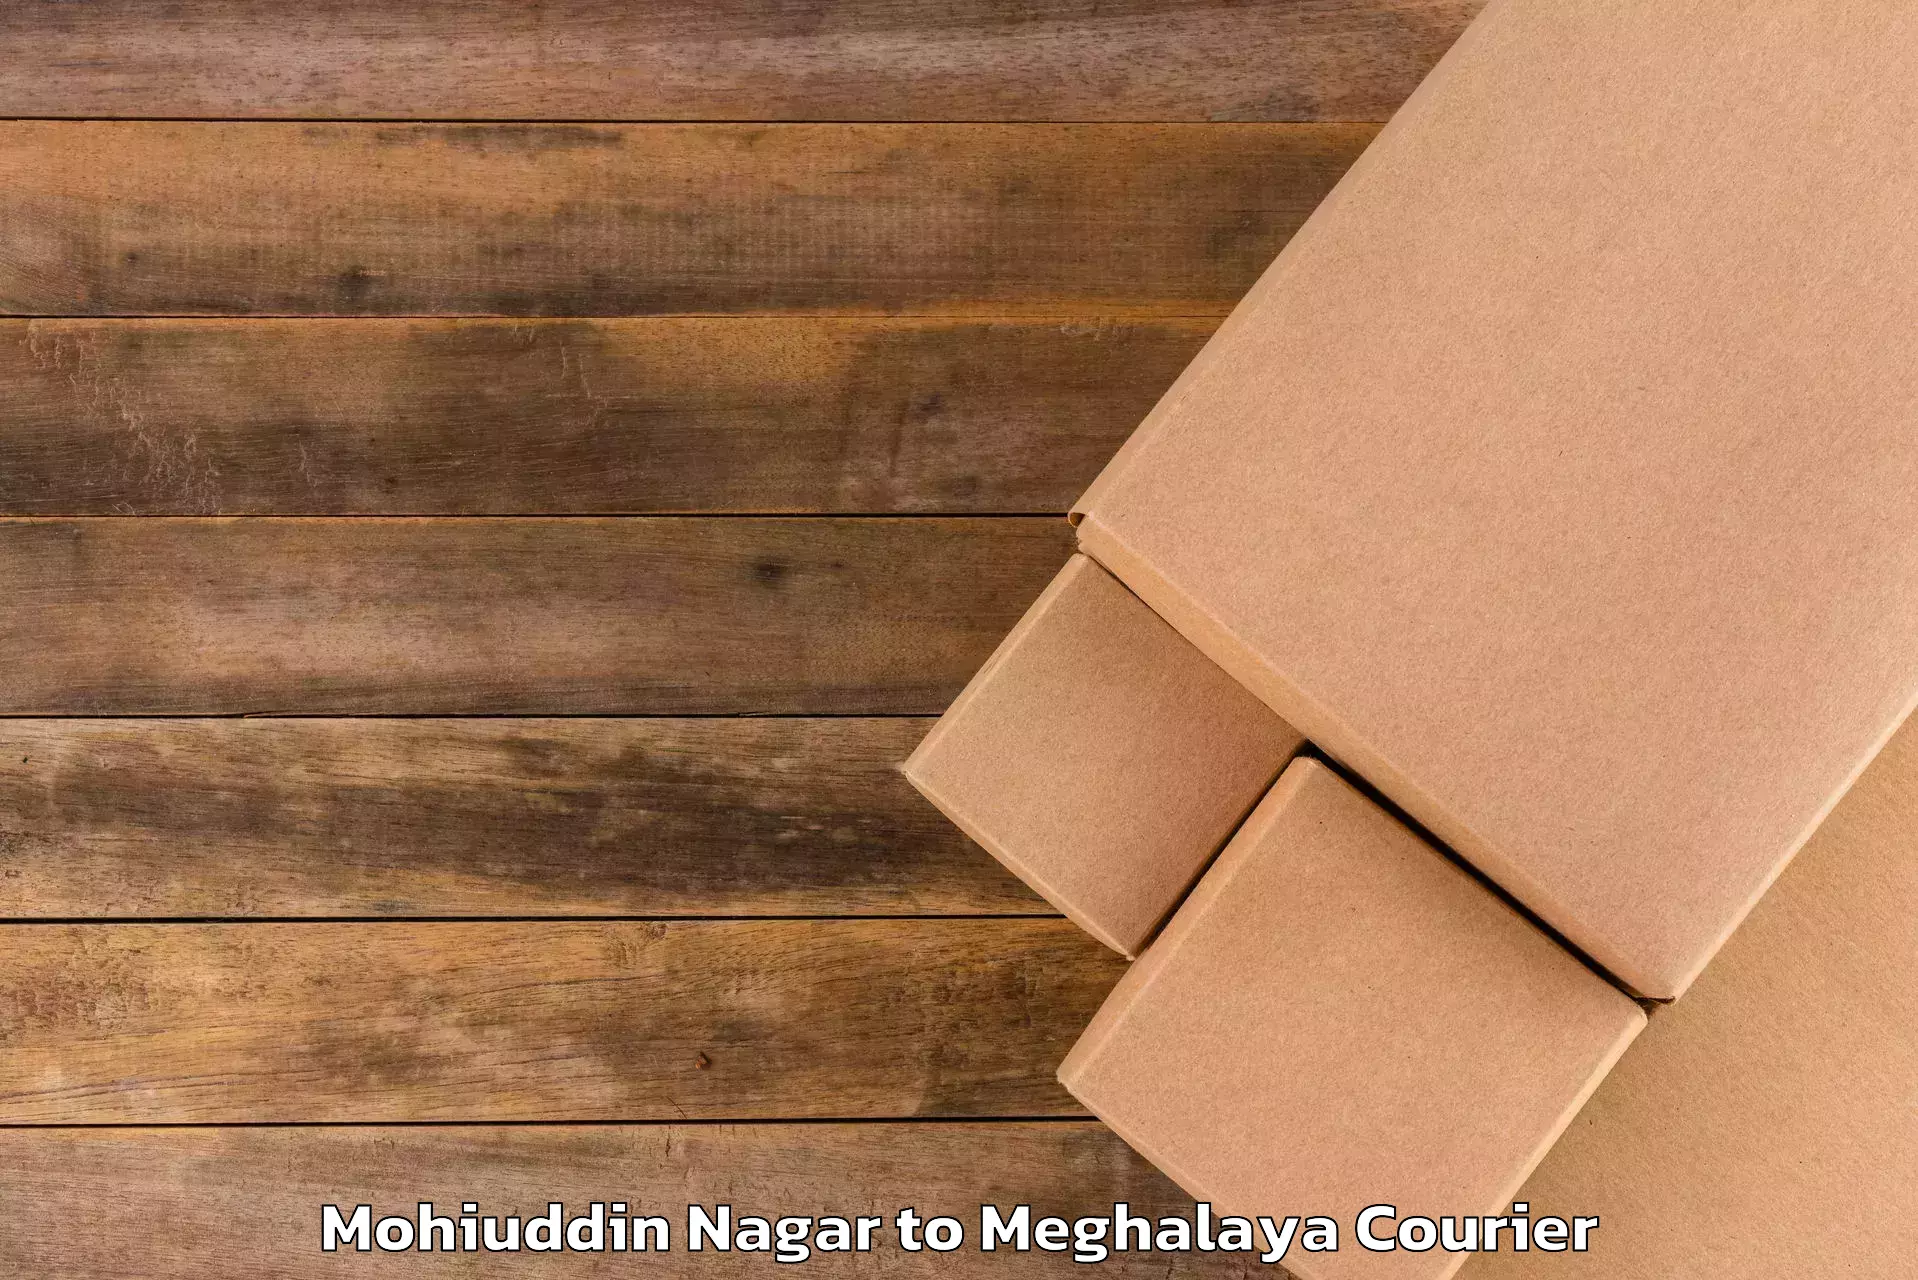 Baggage delivery estimate Mohiuddin Nagar to Meghalaya